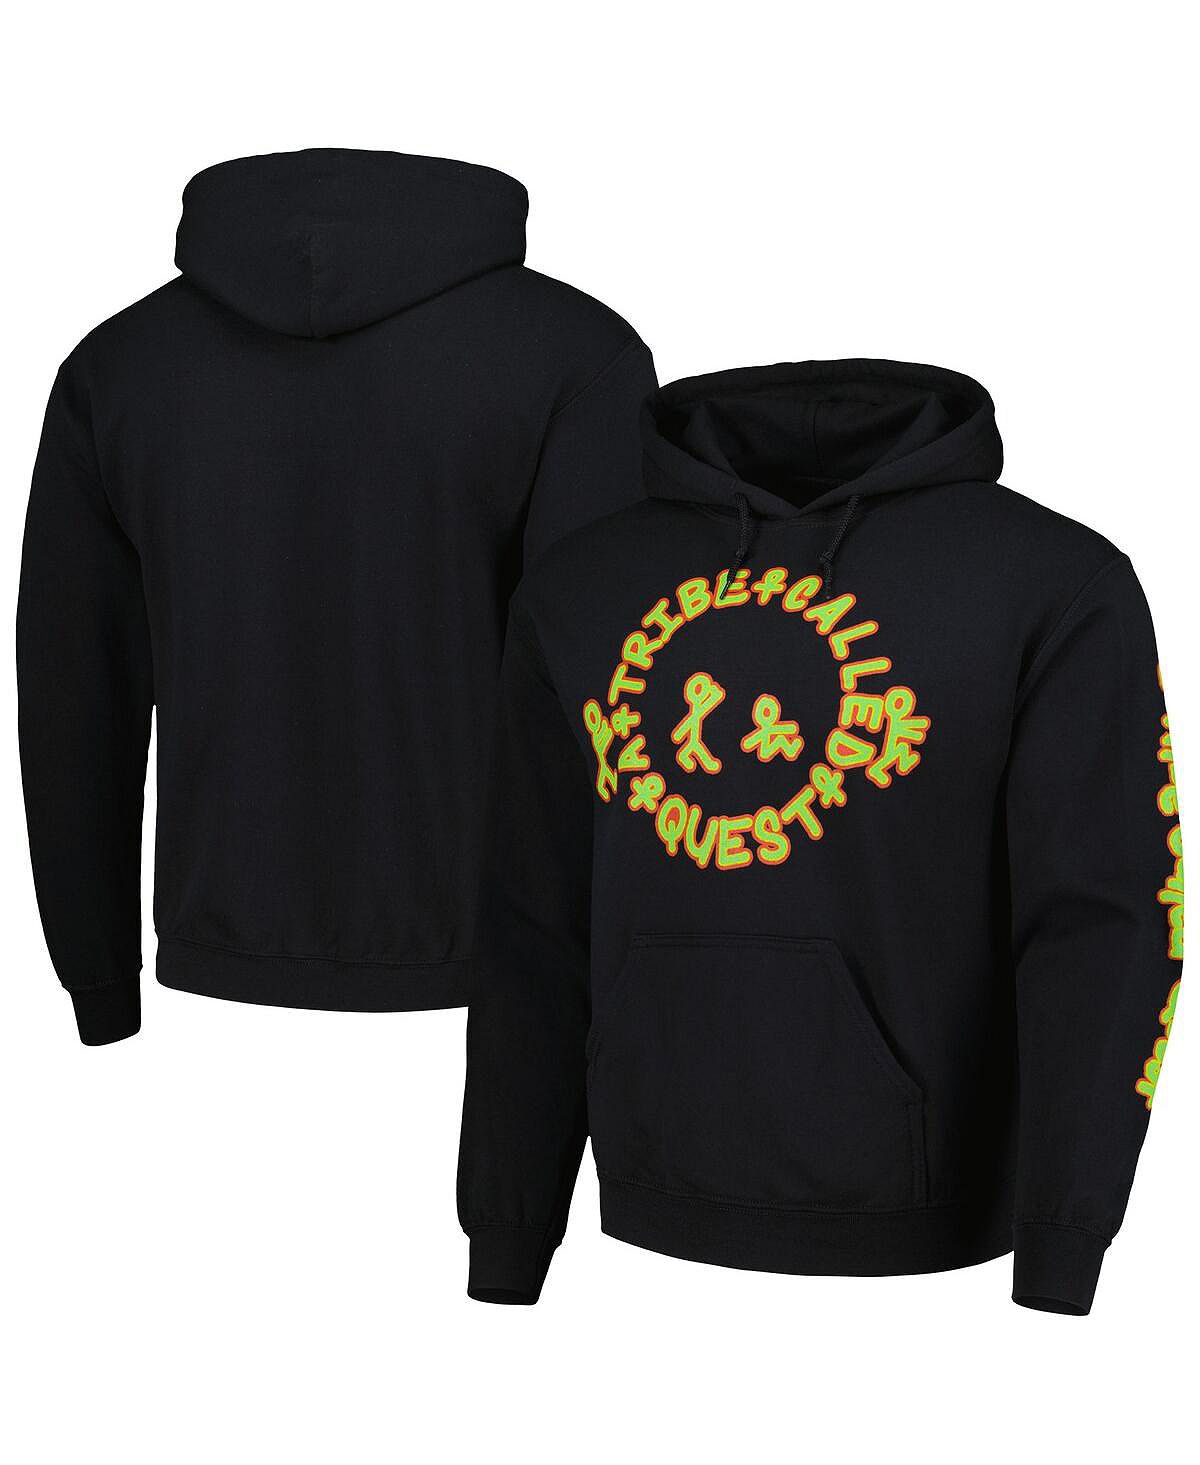 Мужской и женский черный пуловер с капюшоном A Tribe Called Quest с рисунком Philcos цена и фото